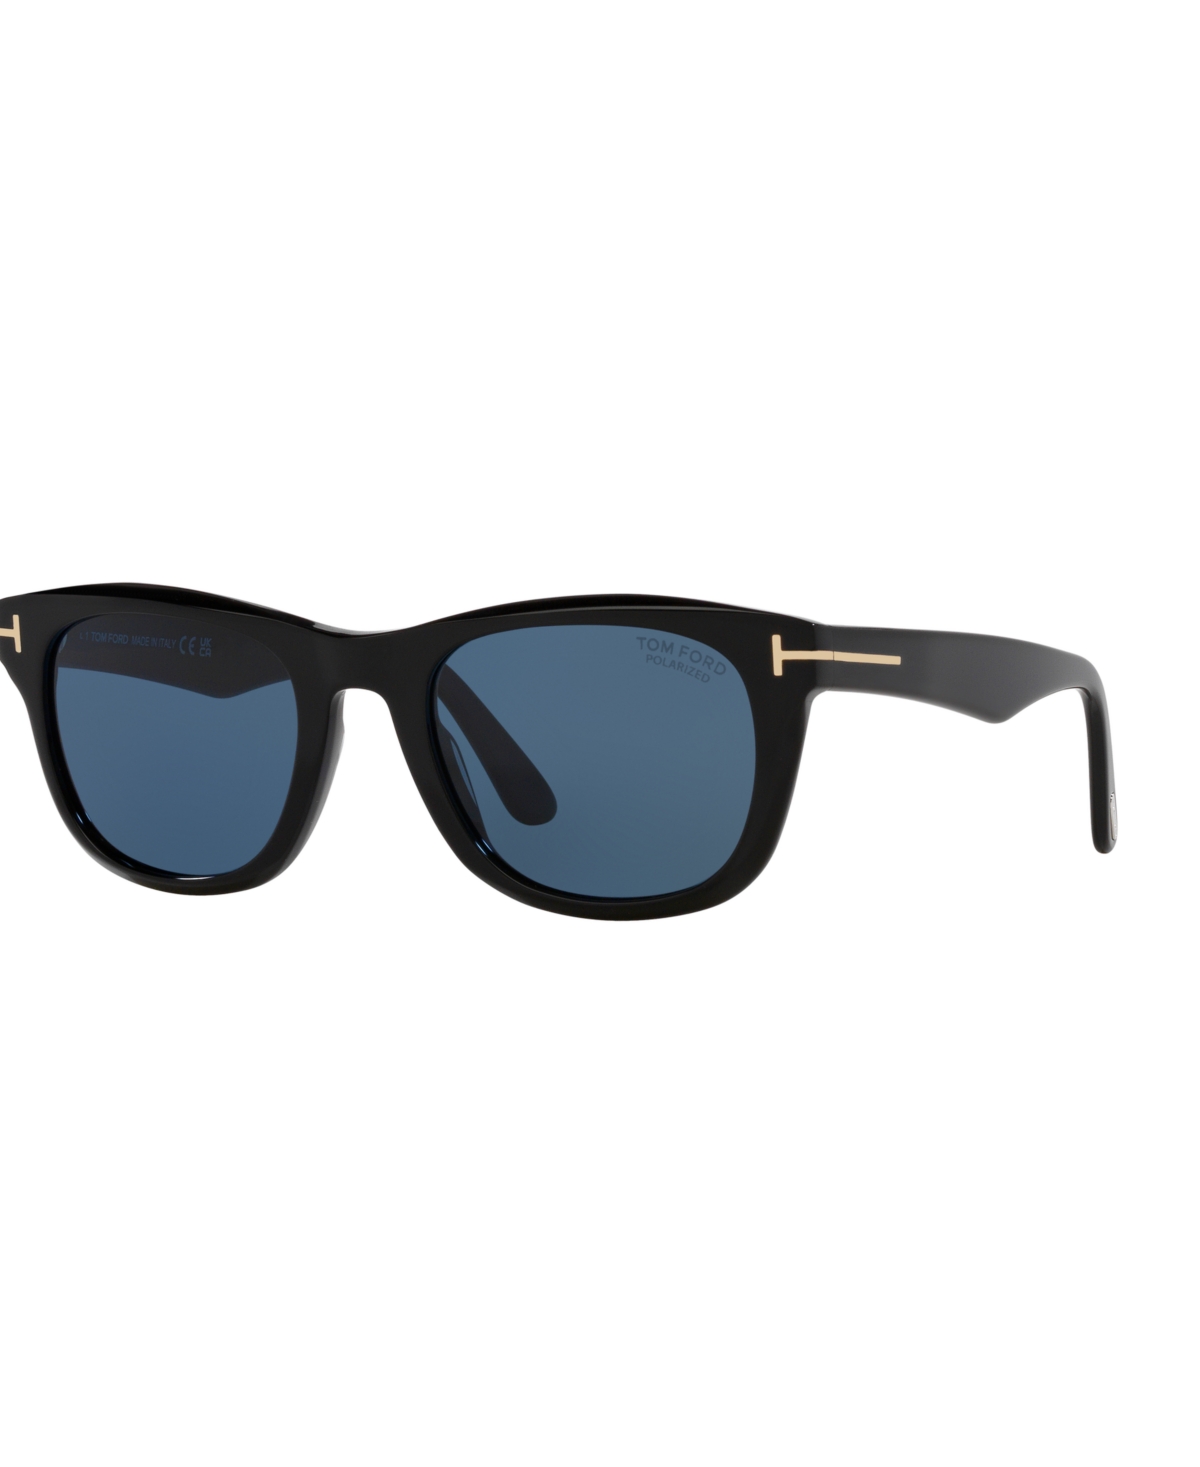 Men's Polarized Sunglasses, Kendel - Black Shiny